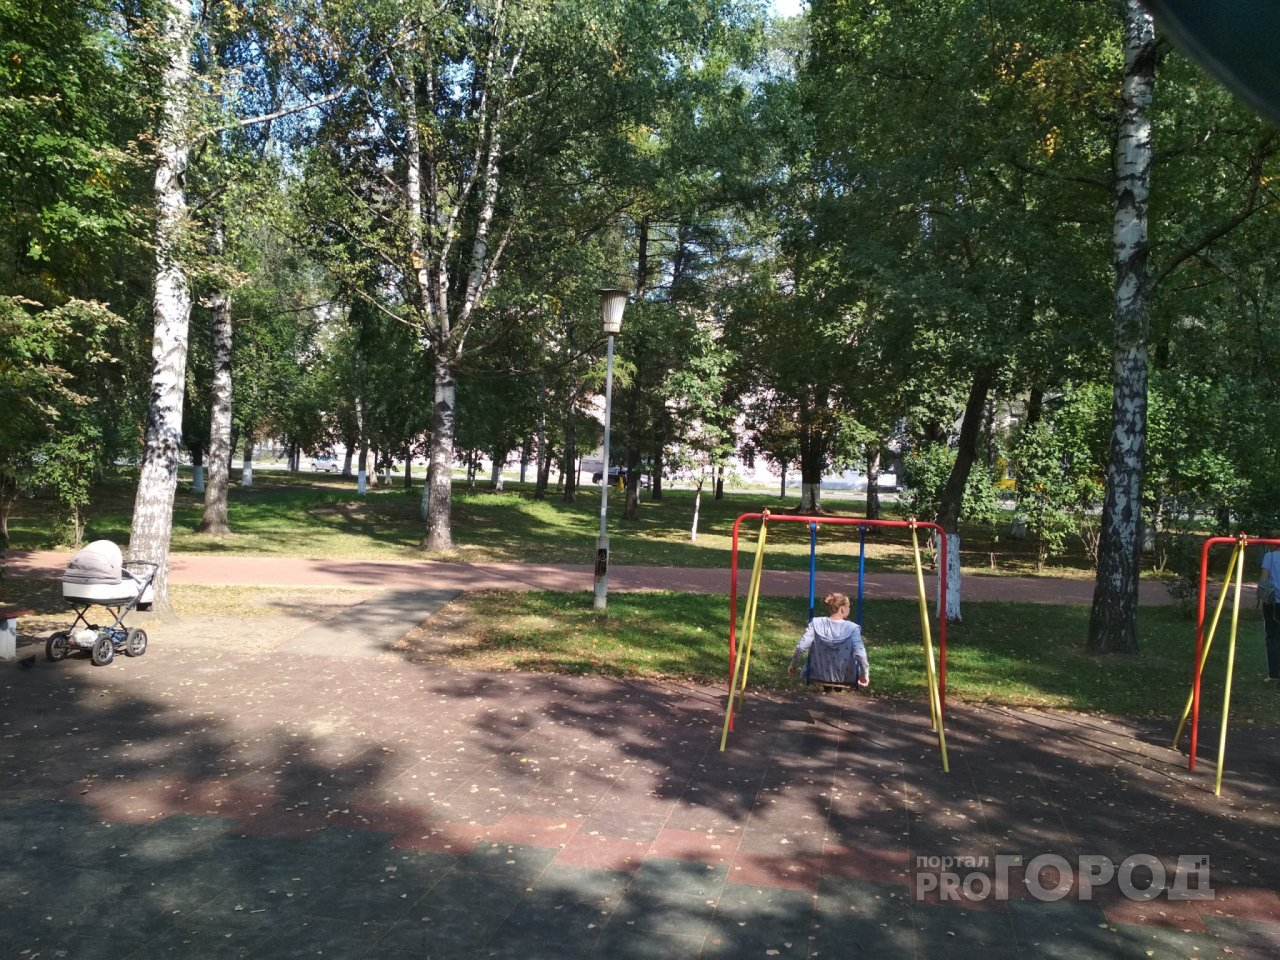 Убьет: смертельная опасность грозит малышам на детской площадке в центре Ярославля